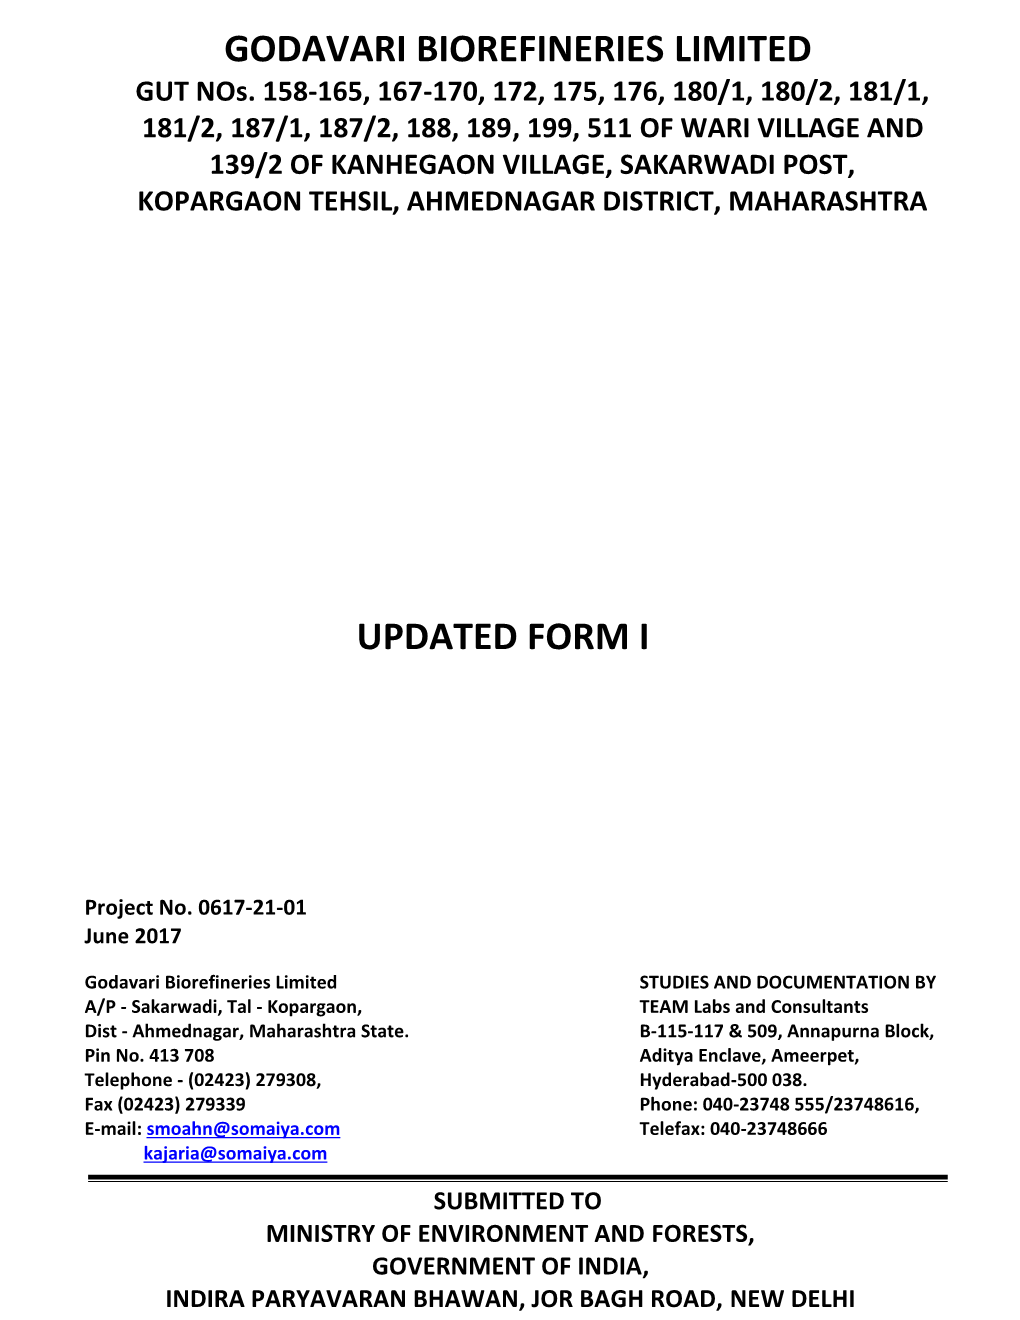 Godavari Biorefineries Limited Updated Form I